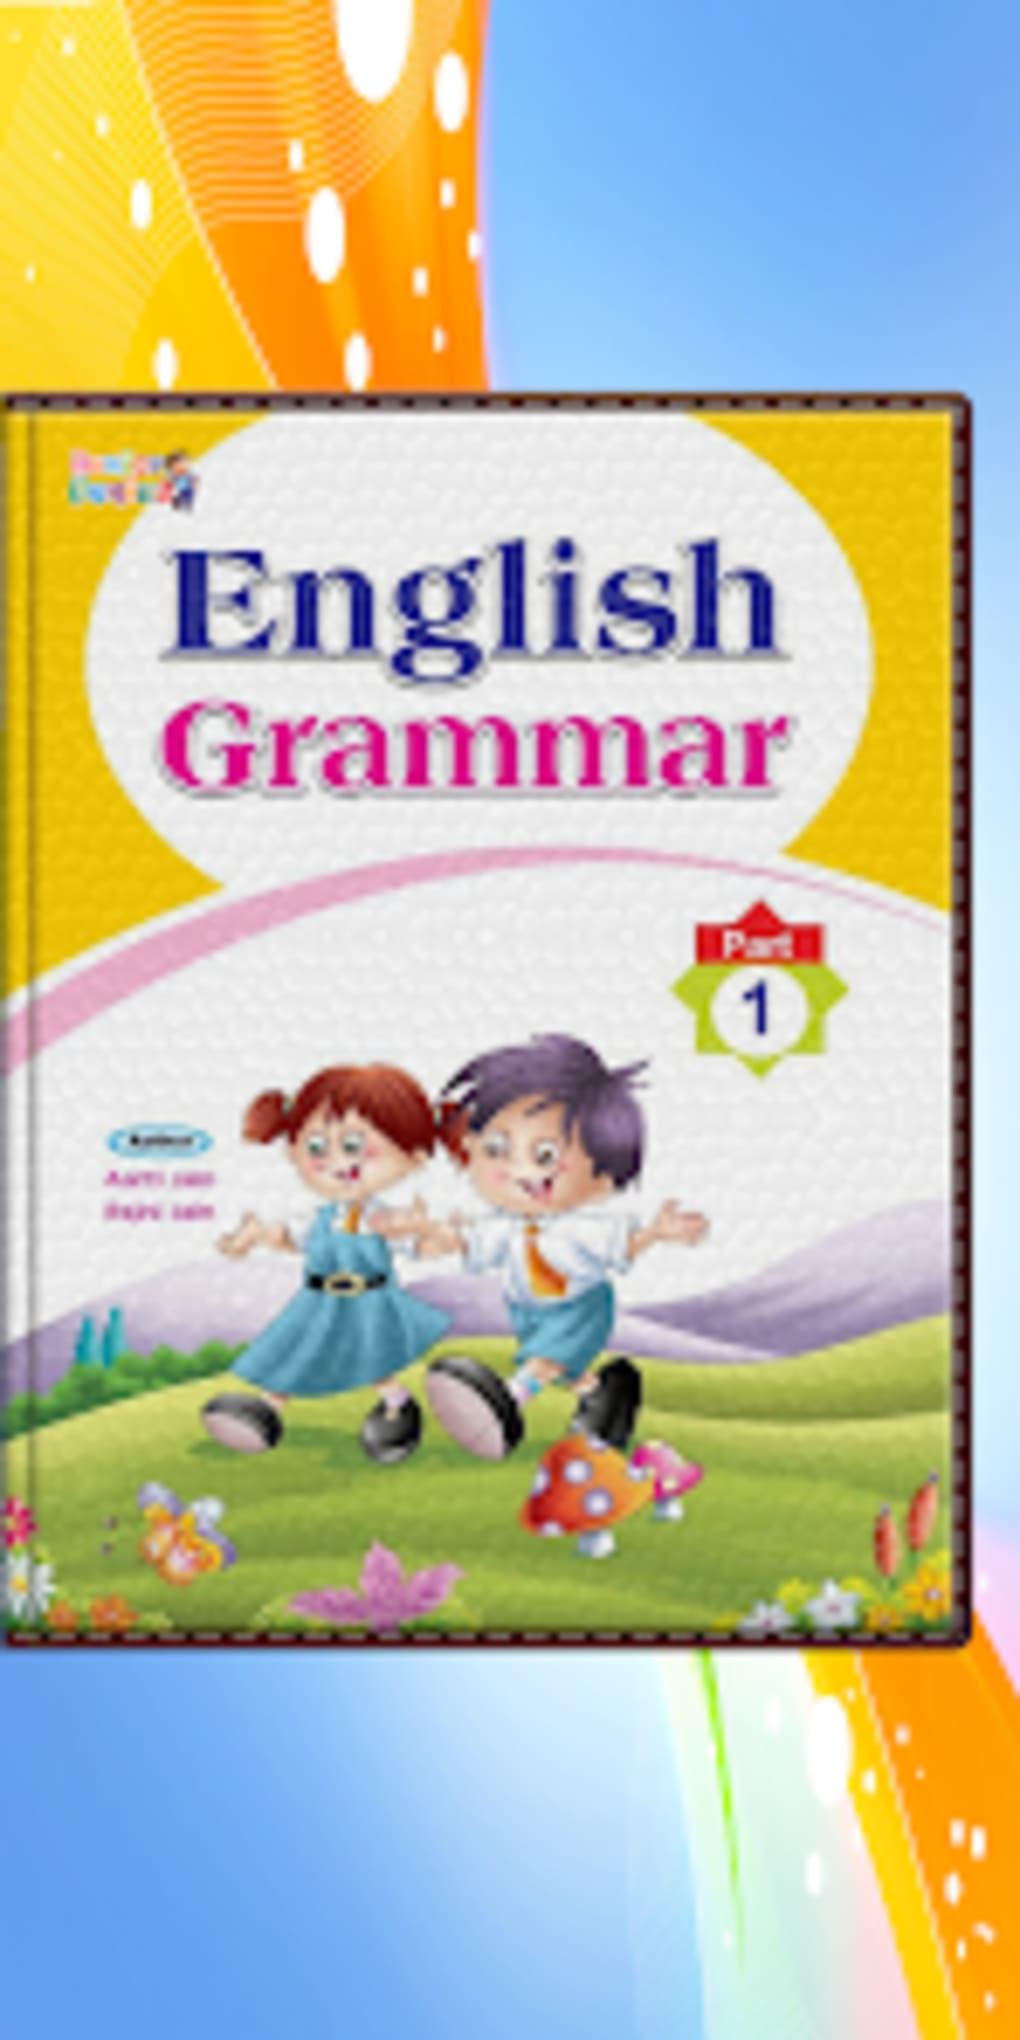 Junior Genius English Grammar für Android - Download